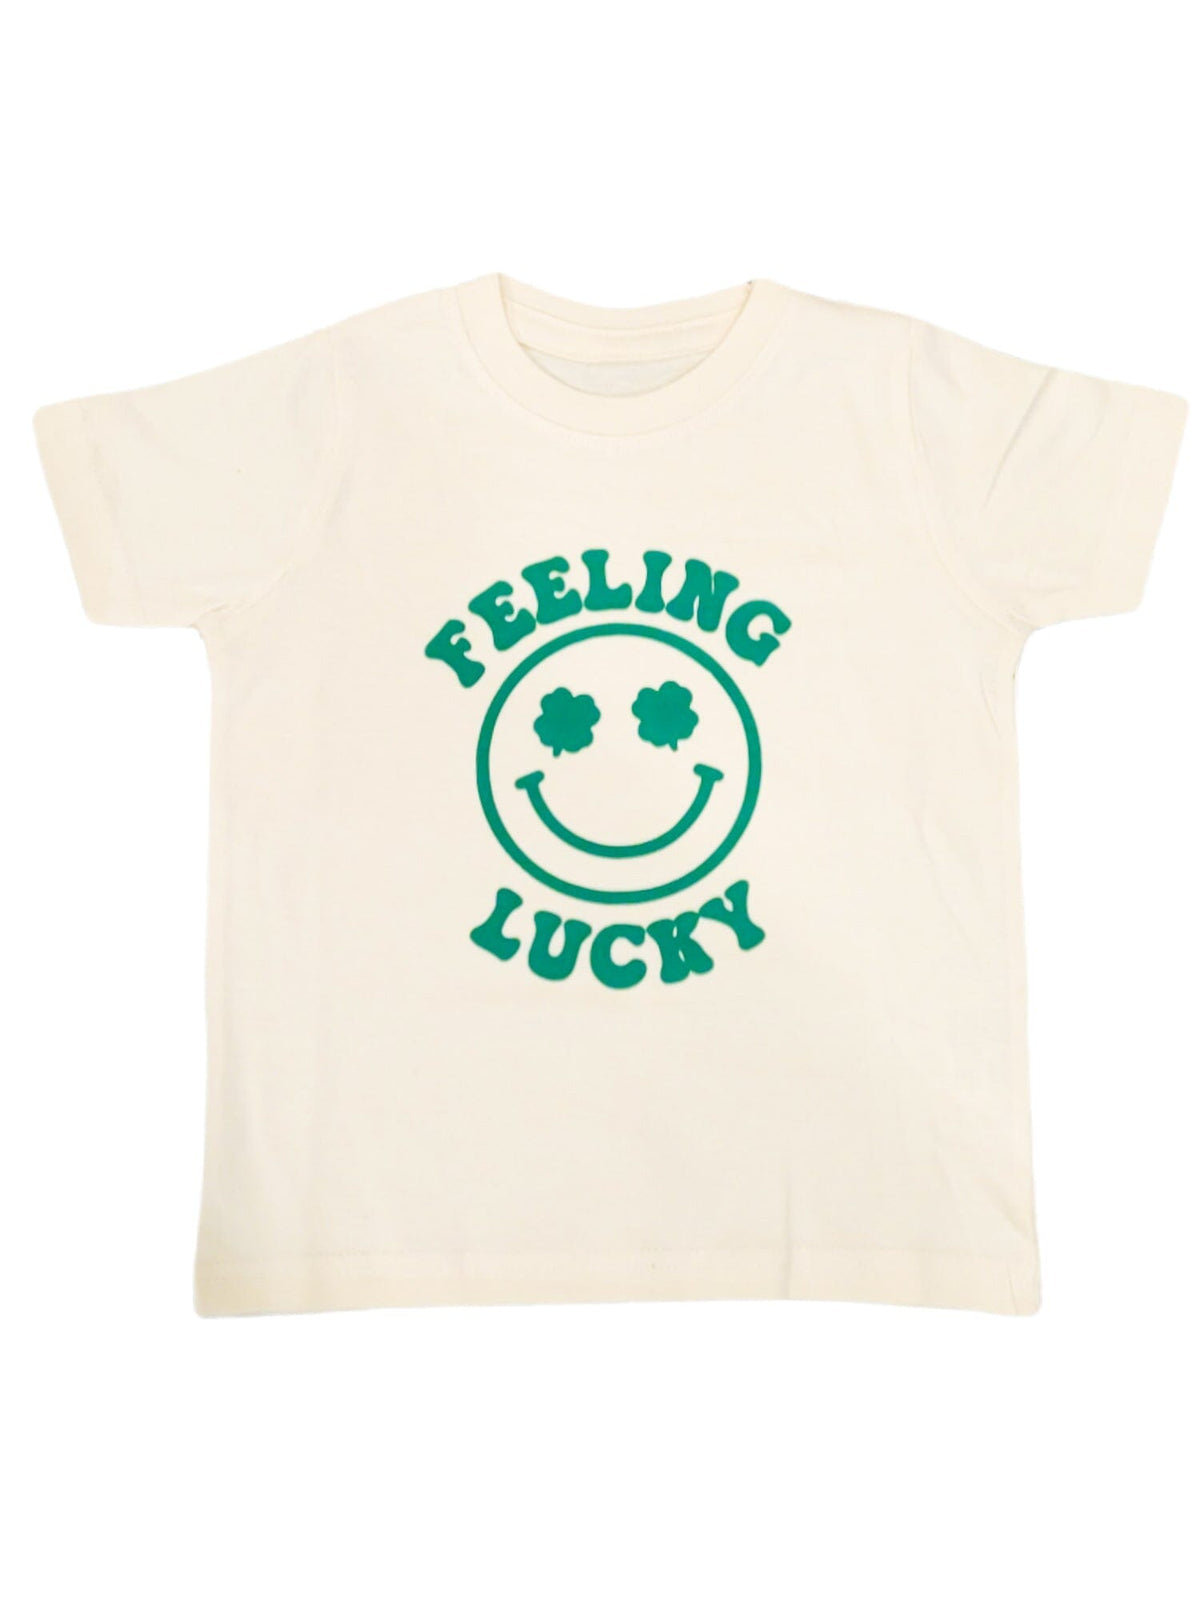 SAMPLE Feeling Lucky Kid's Shirt